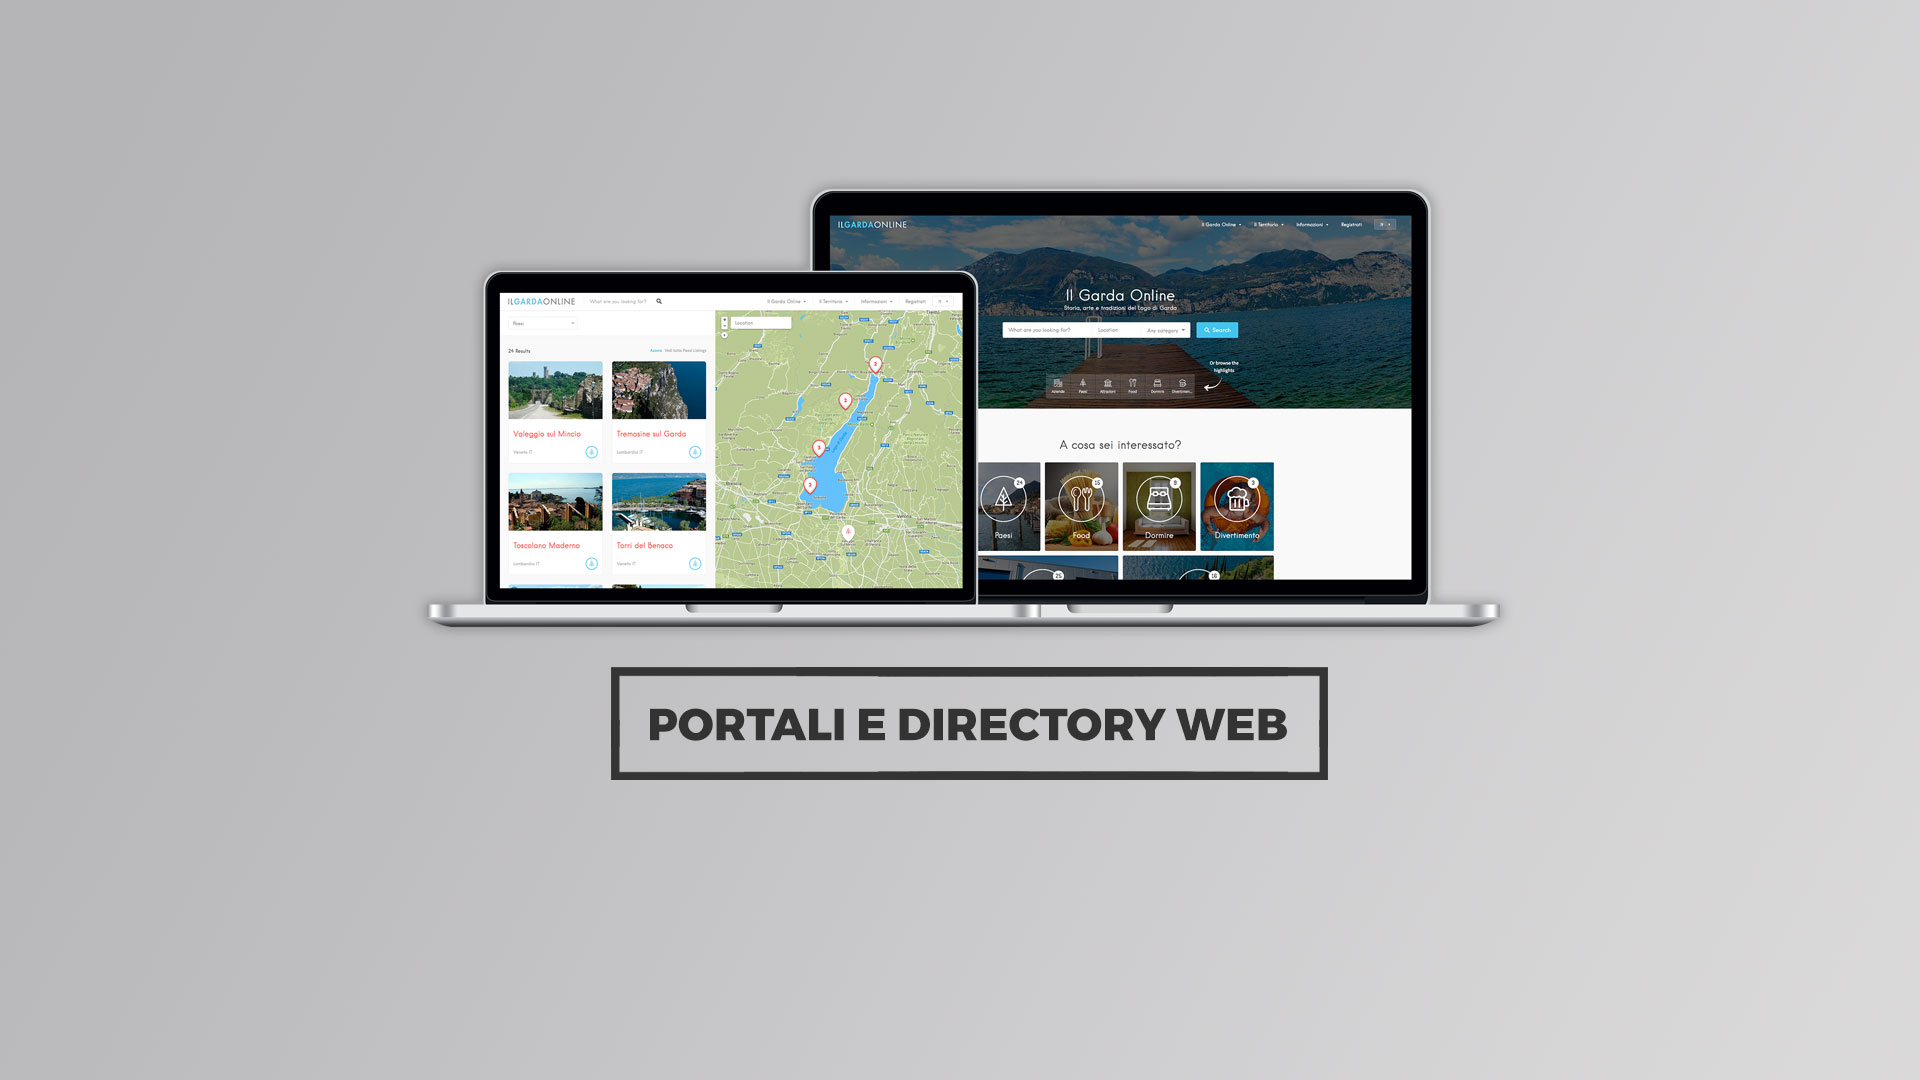 Portali e Directory Web